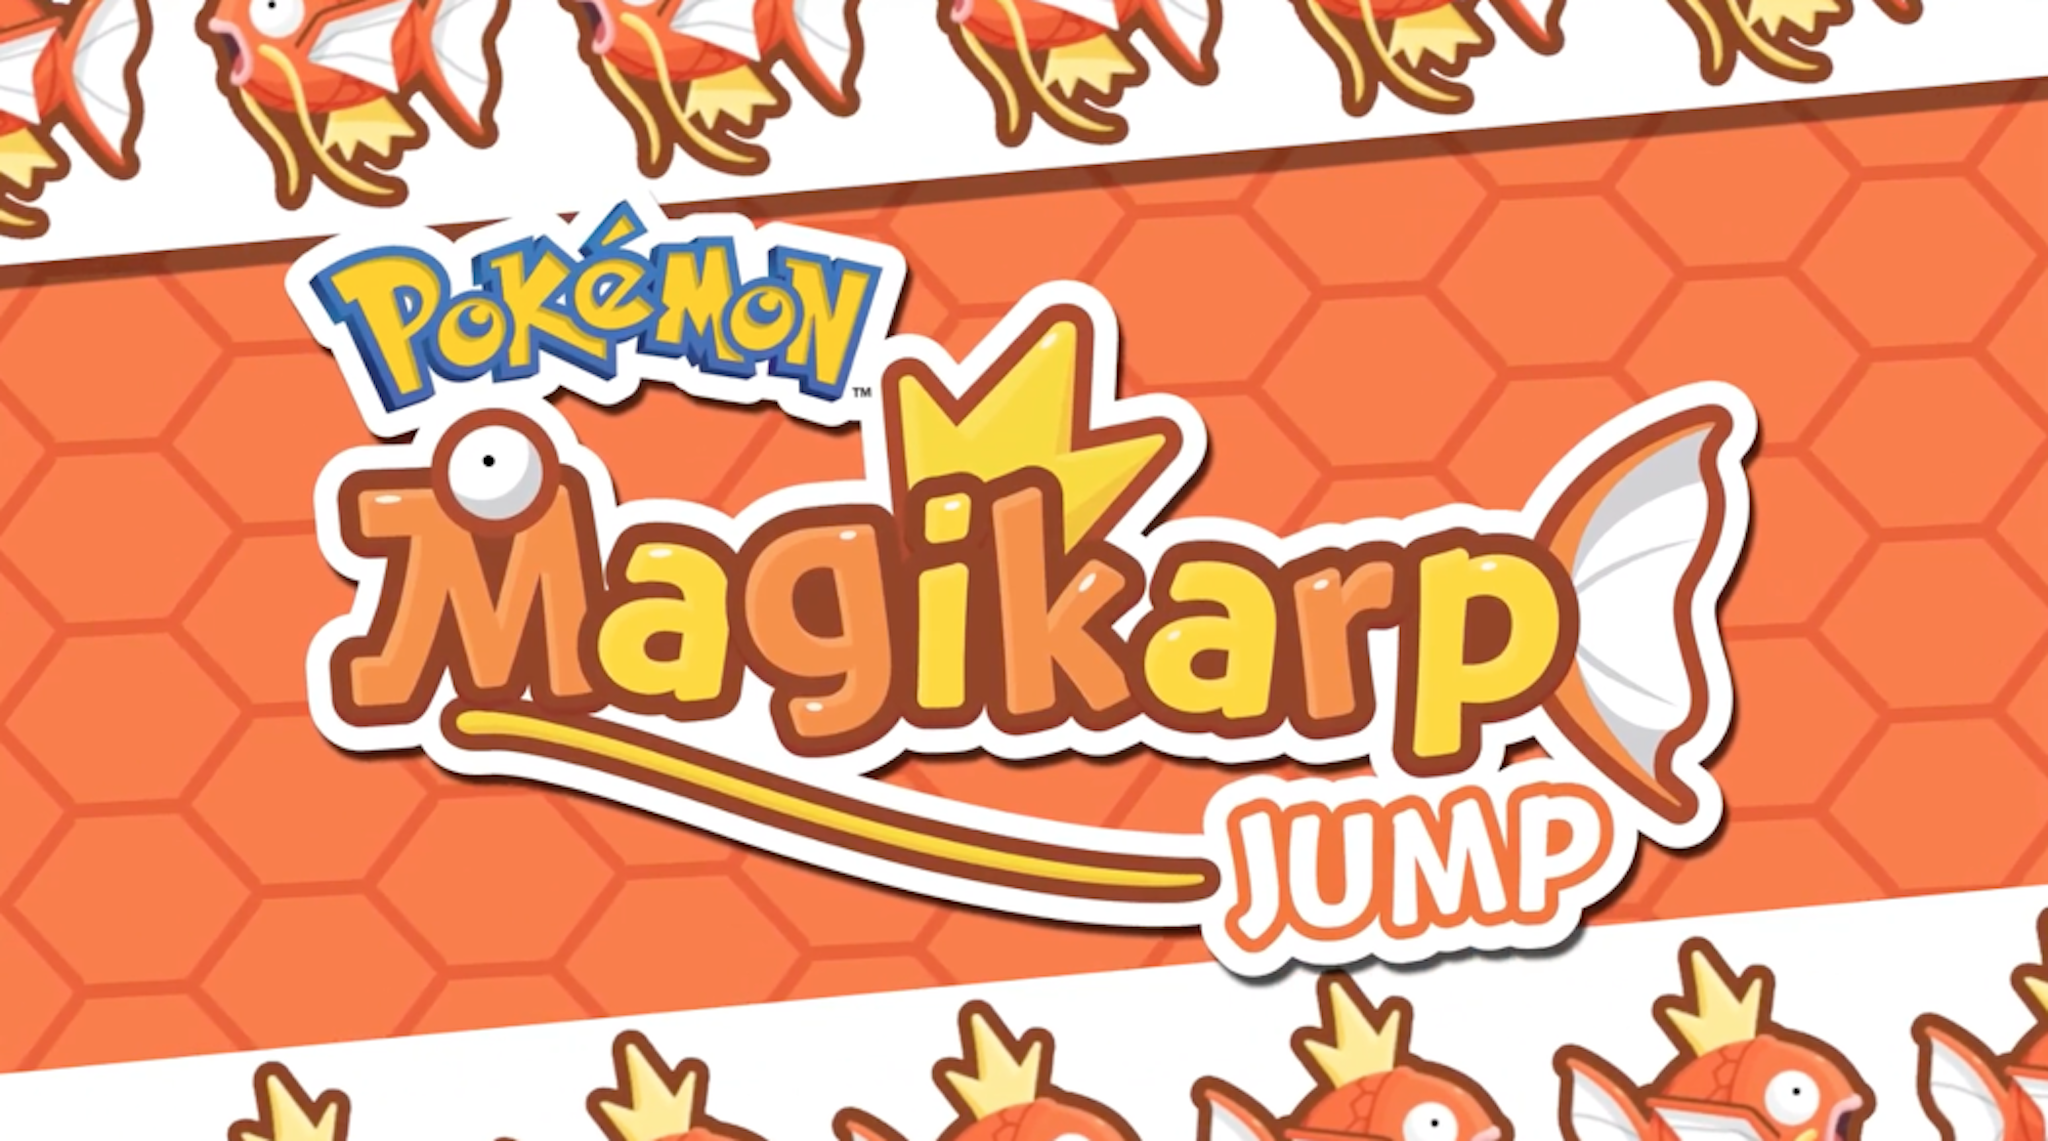 Mời anh em chơi game Pokemon mới: Magikarp Jump- "Hoá rồng" cho cá chép